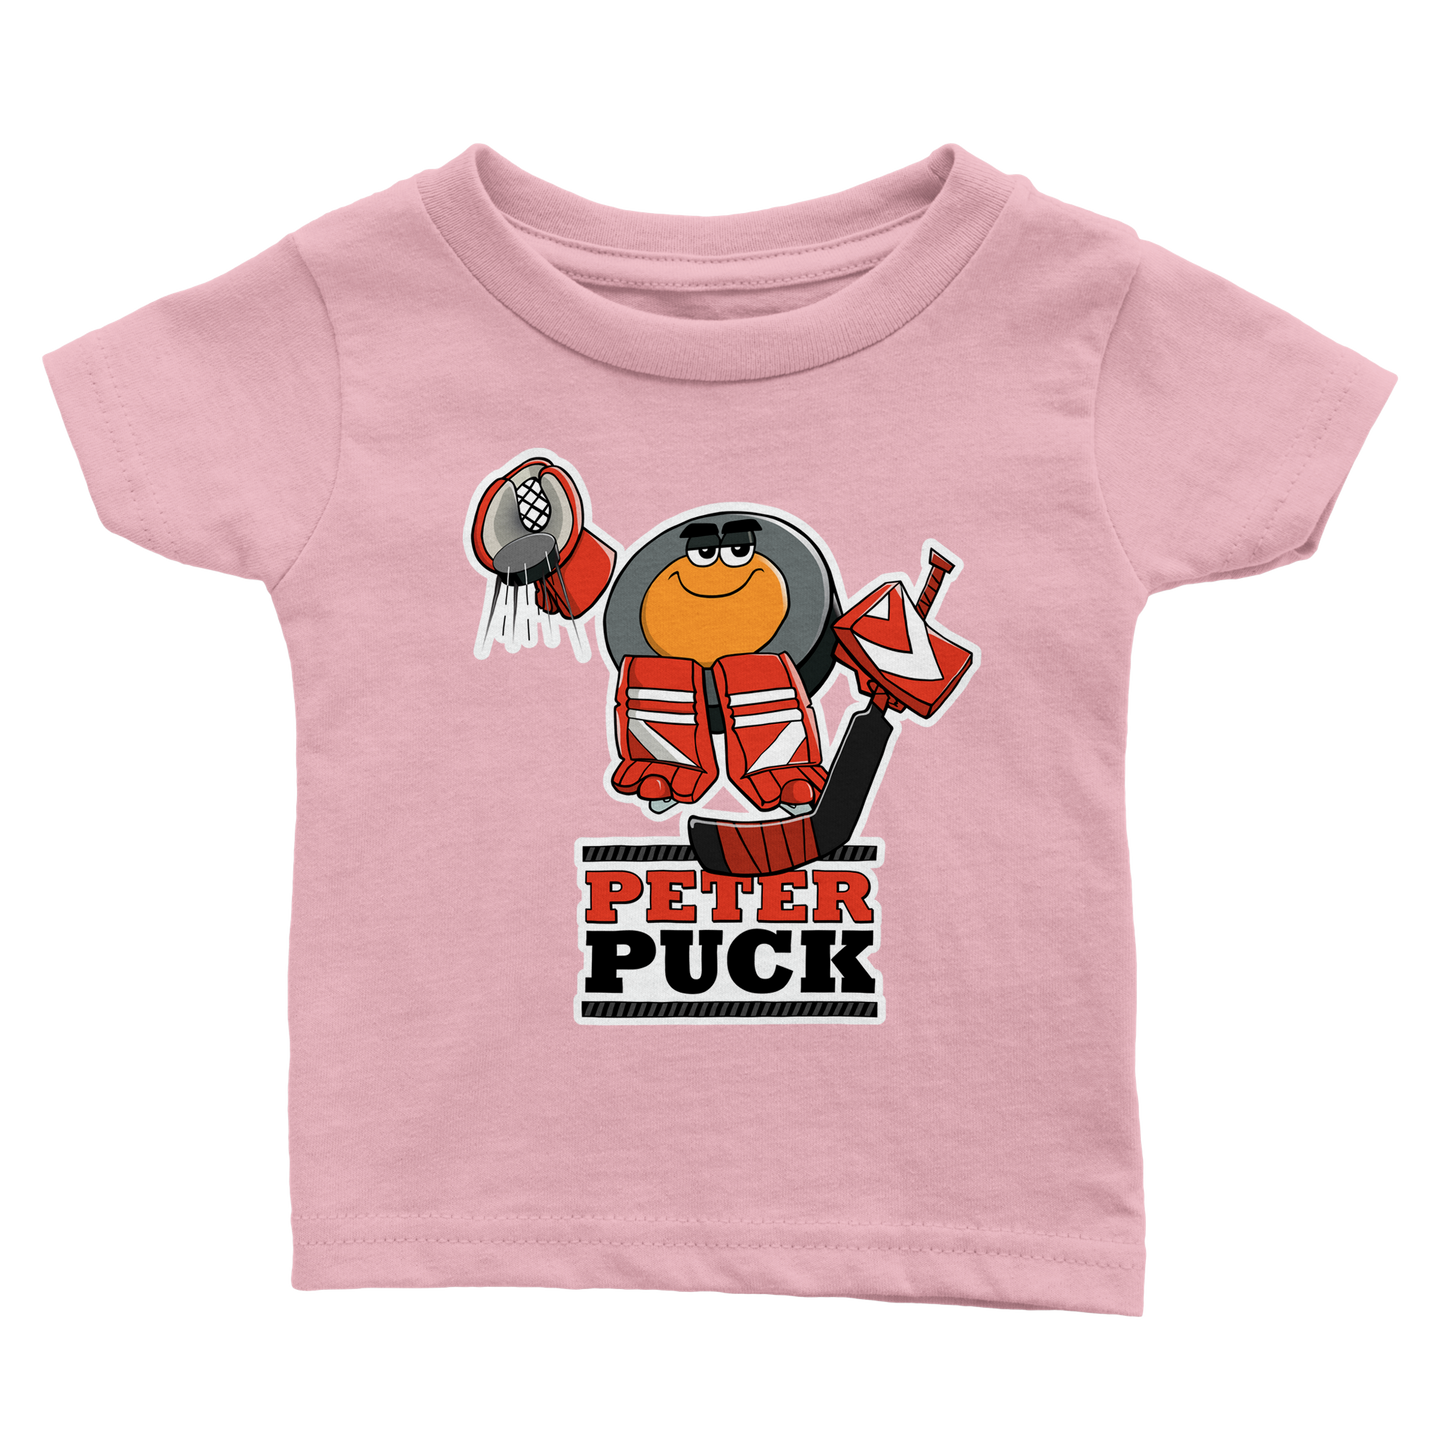 Peter Puck Plays Goalie Classic Baby Crewneck T-shirt